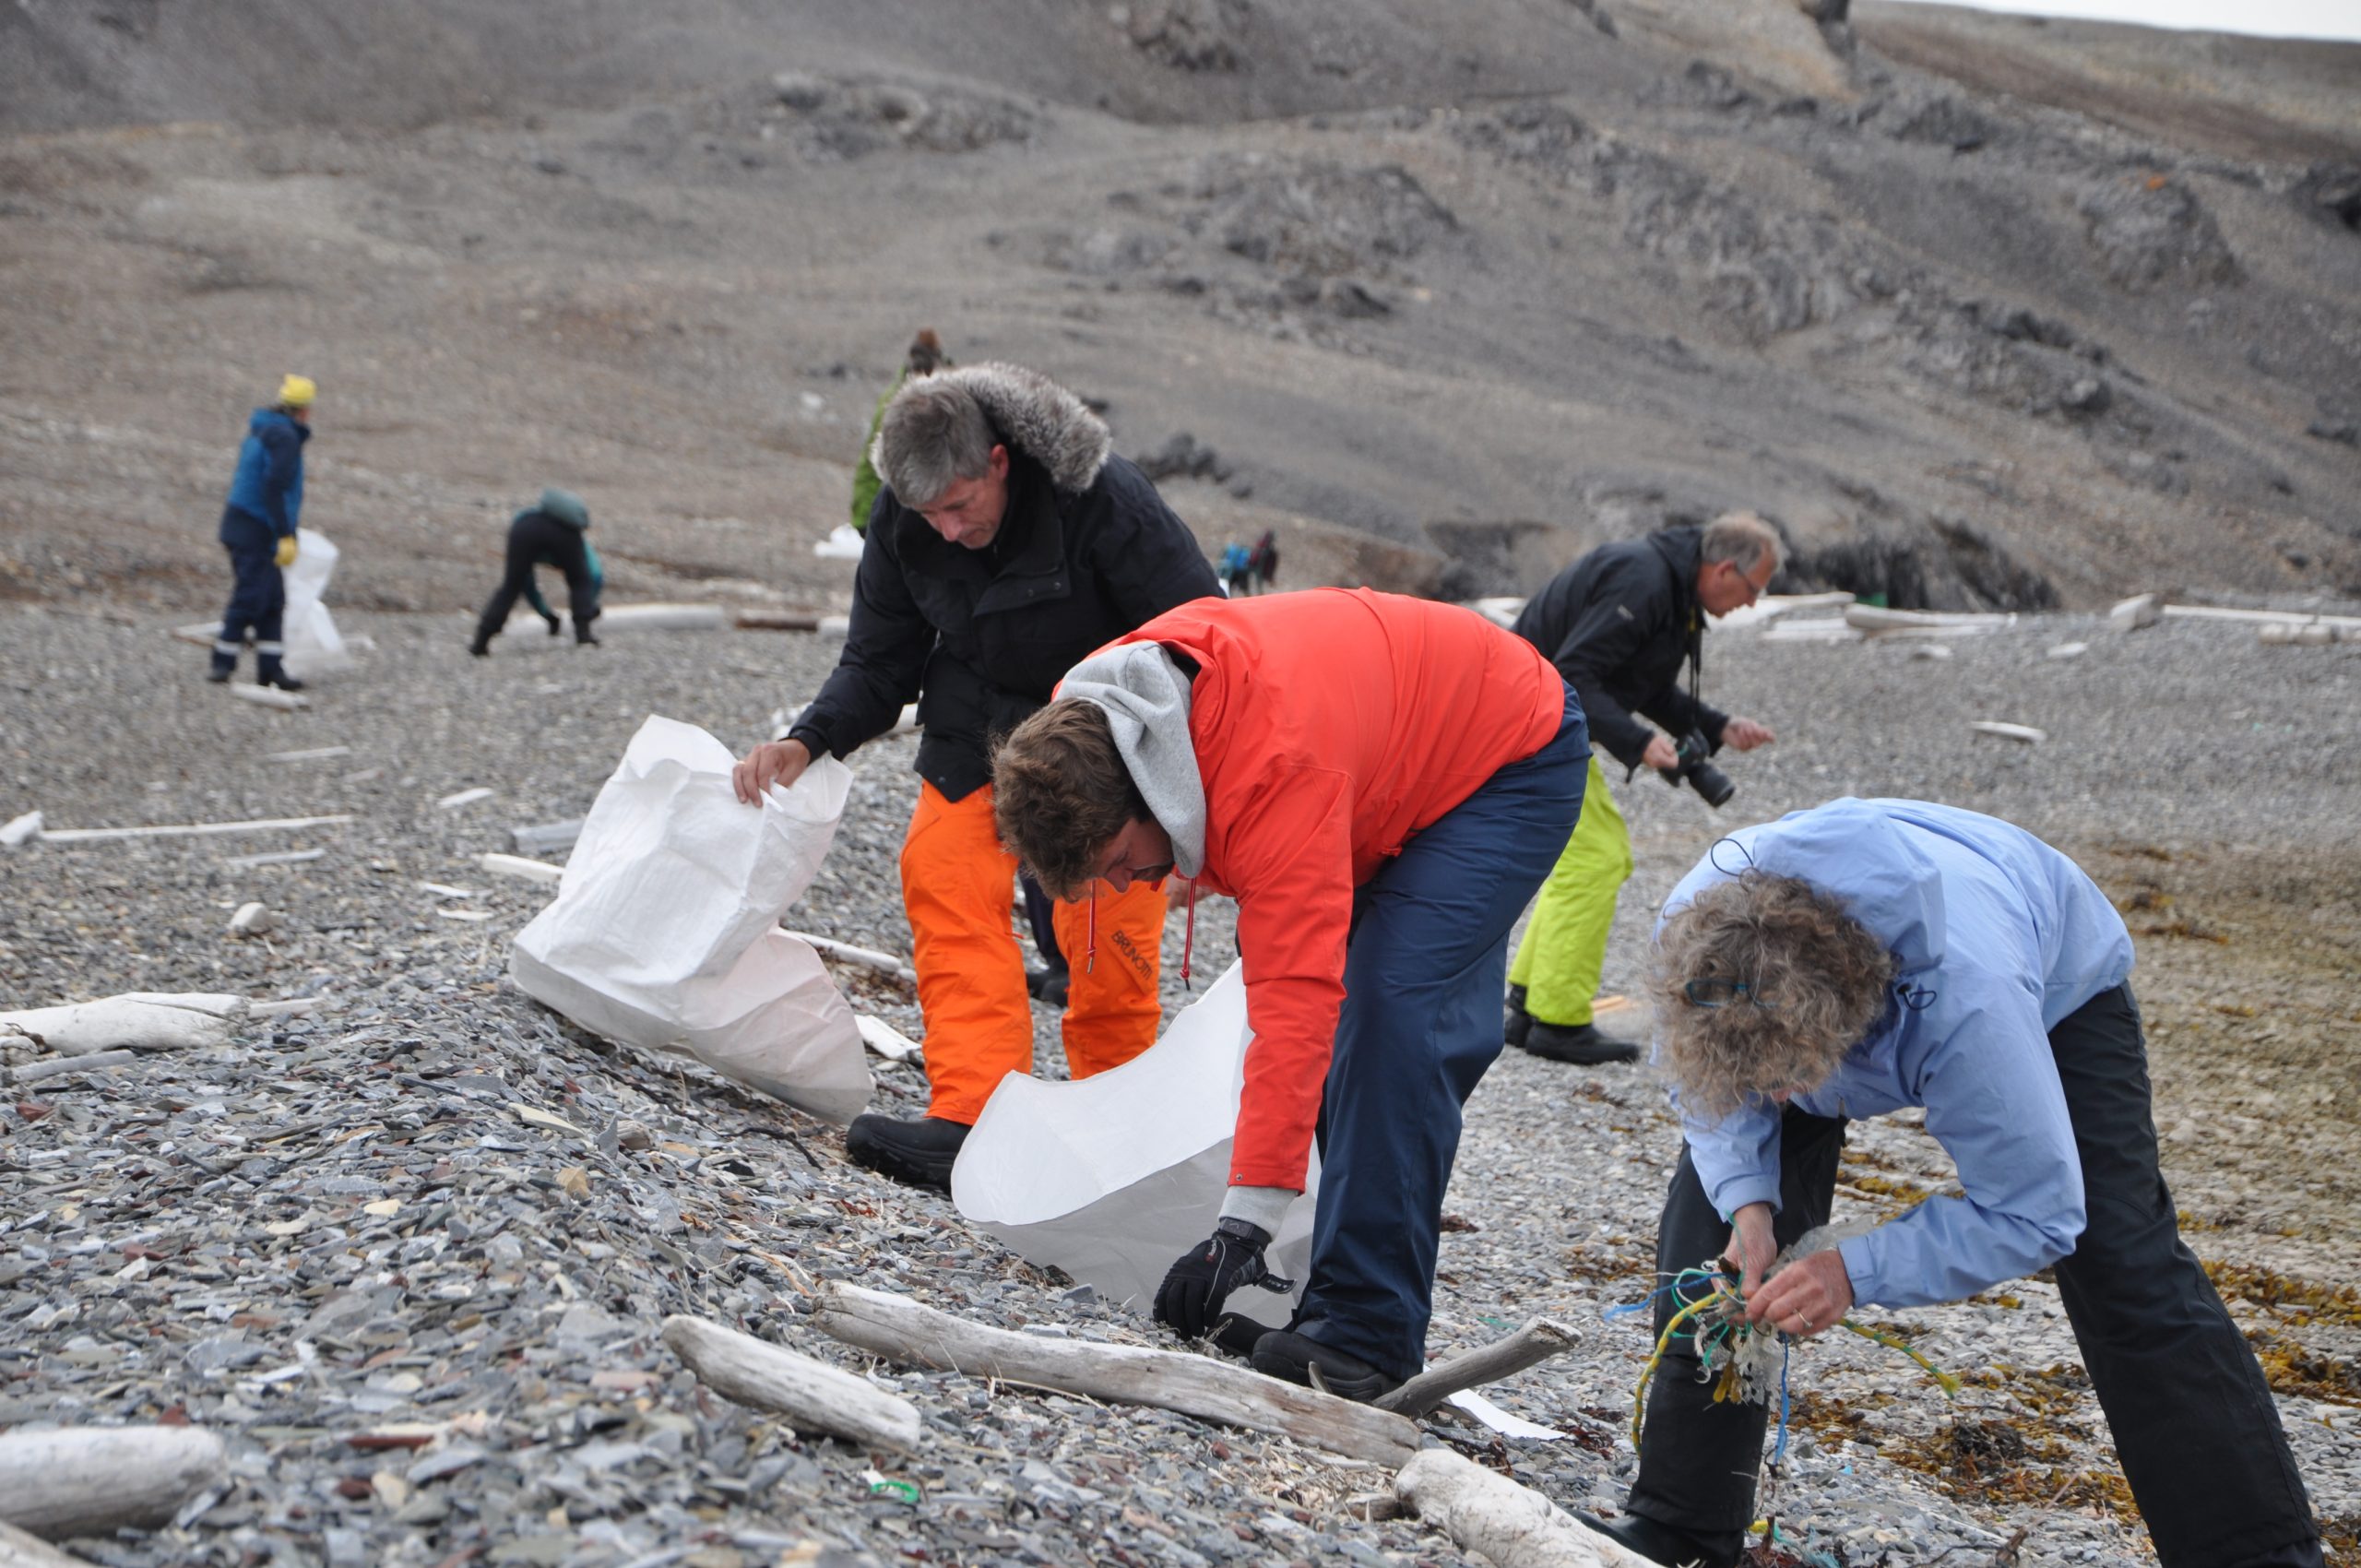 Investigadores descubren 23.000 residuos plásticos en playas remotas del Océano Ártico